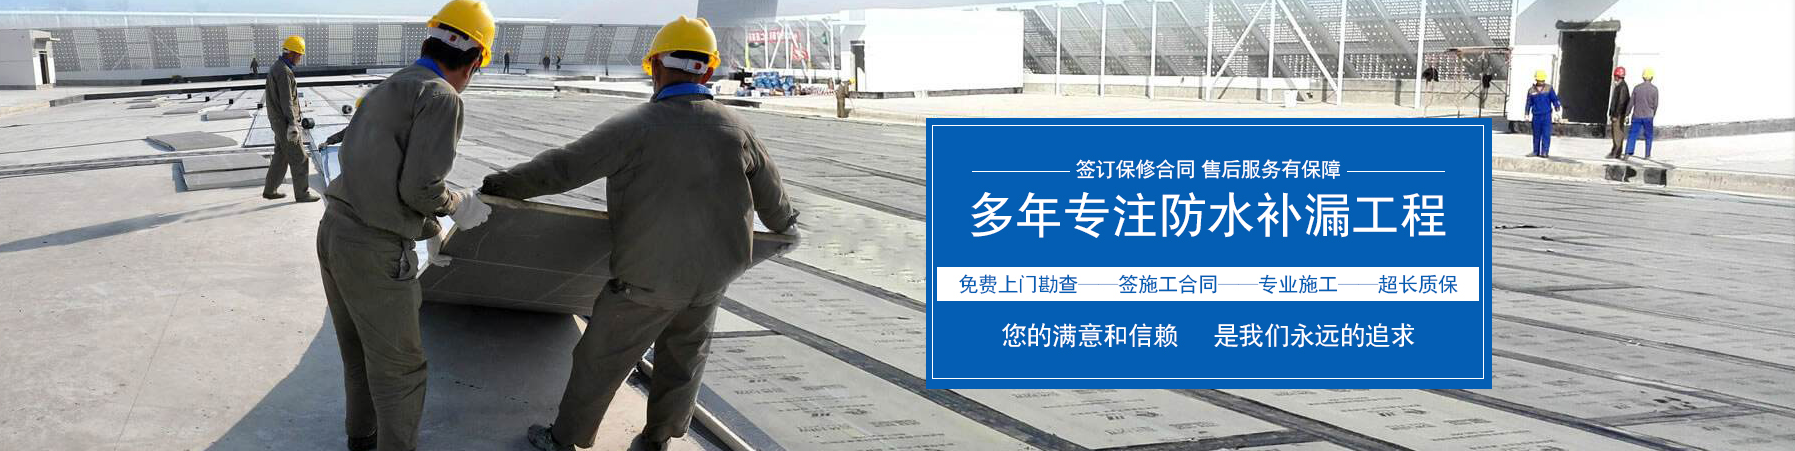 南京六合防水房屋维修